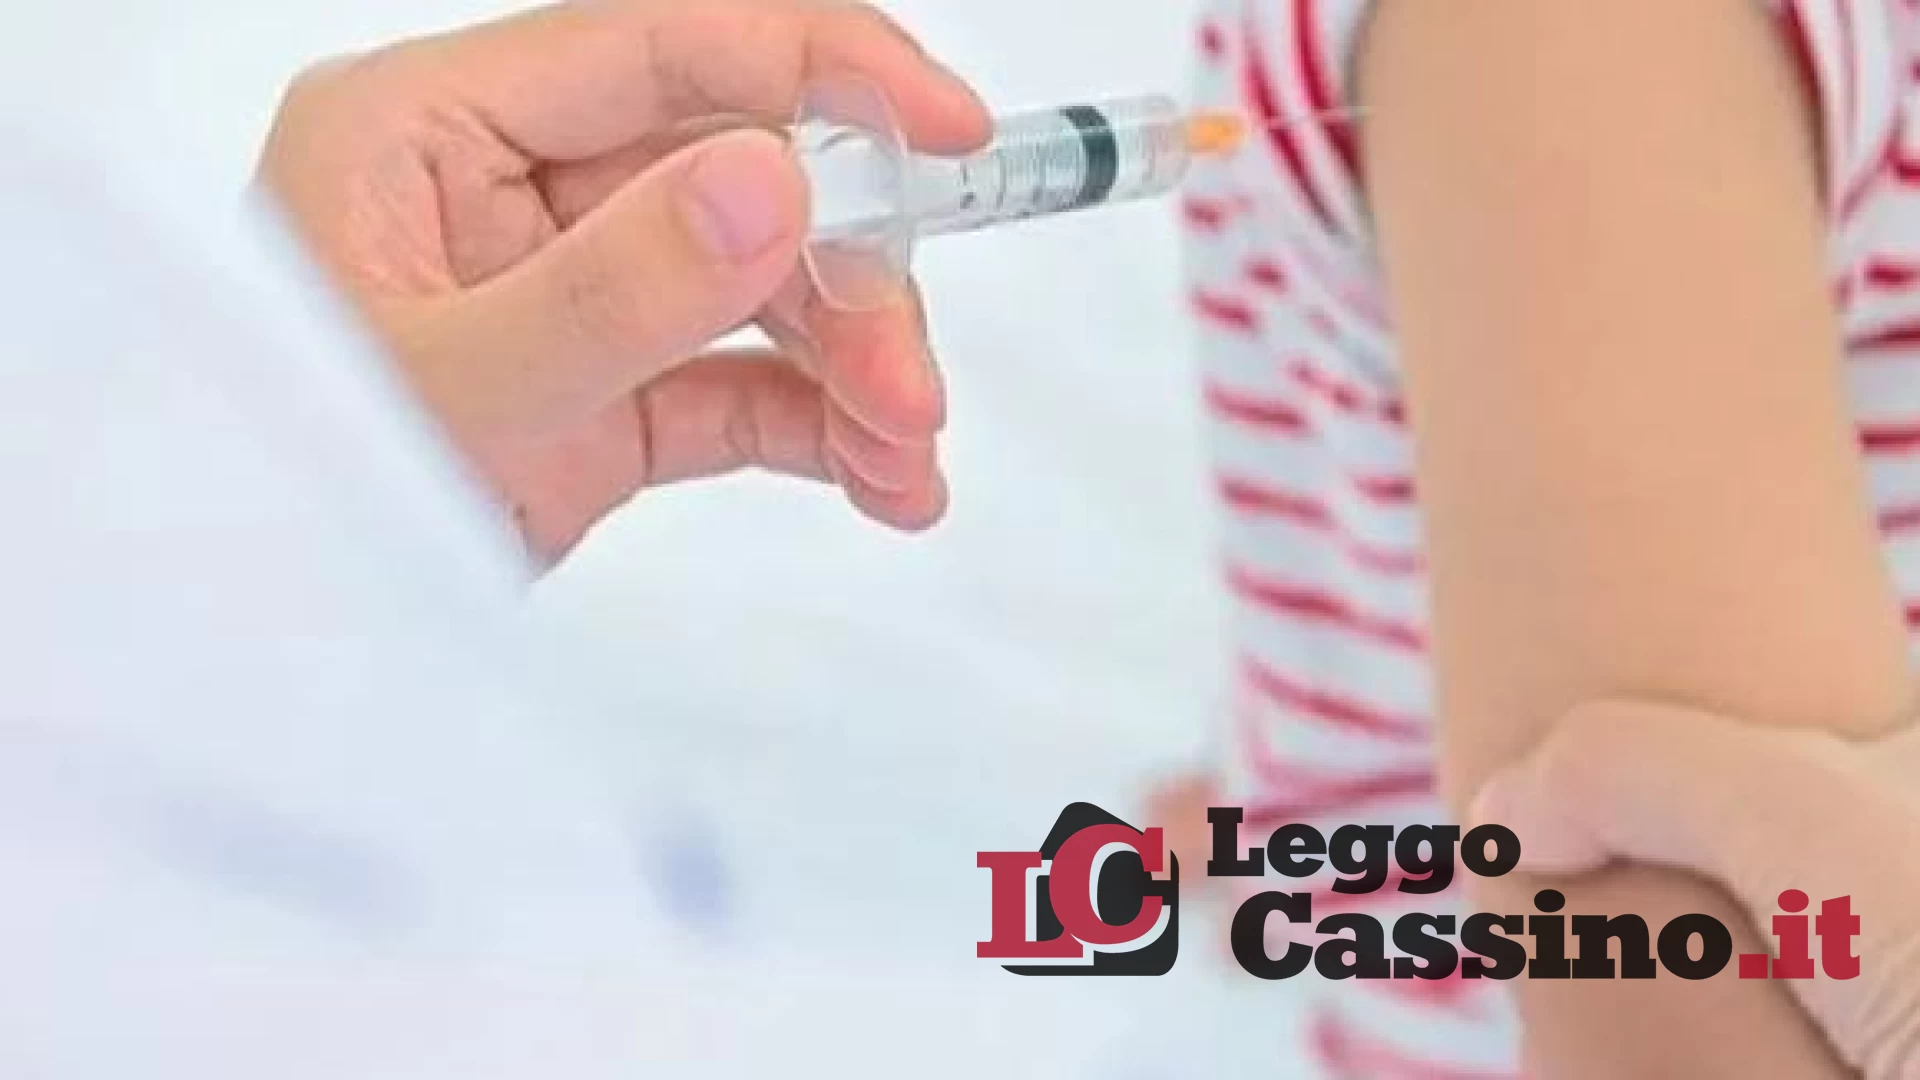 Covid, vaccino agli under 12. Ecco perché anche i bambini vanno protetti